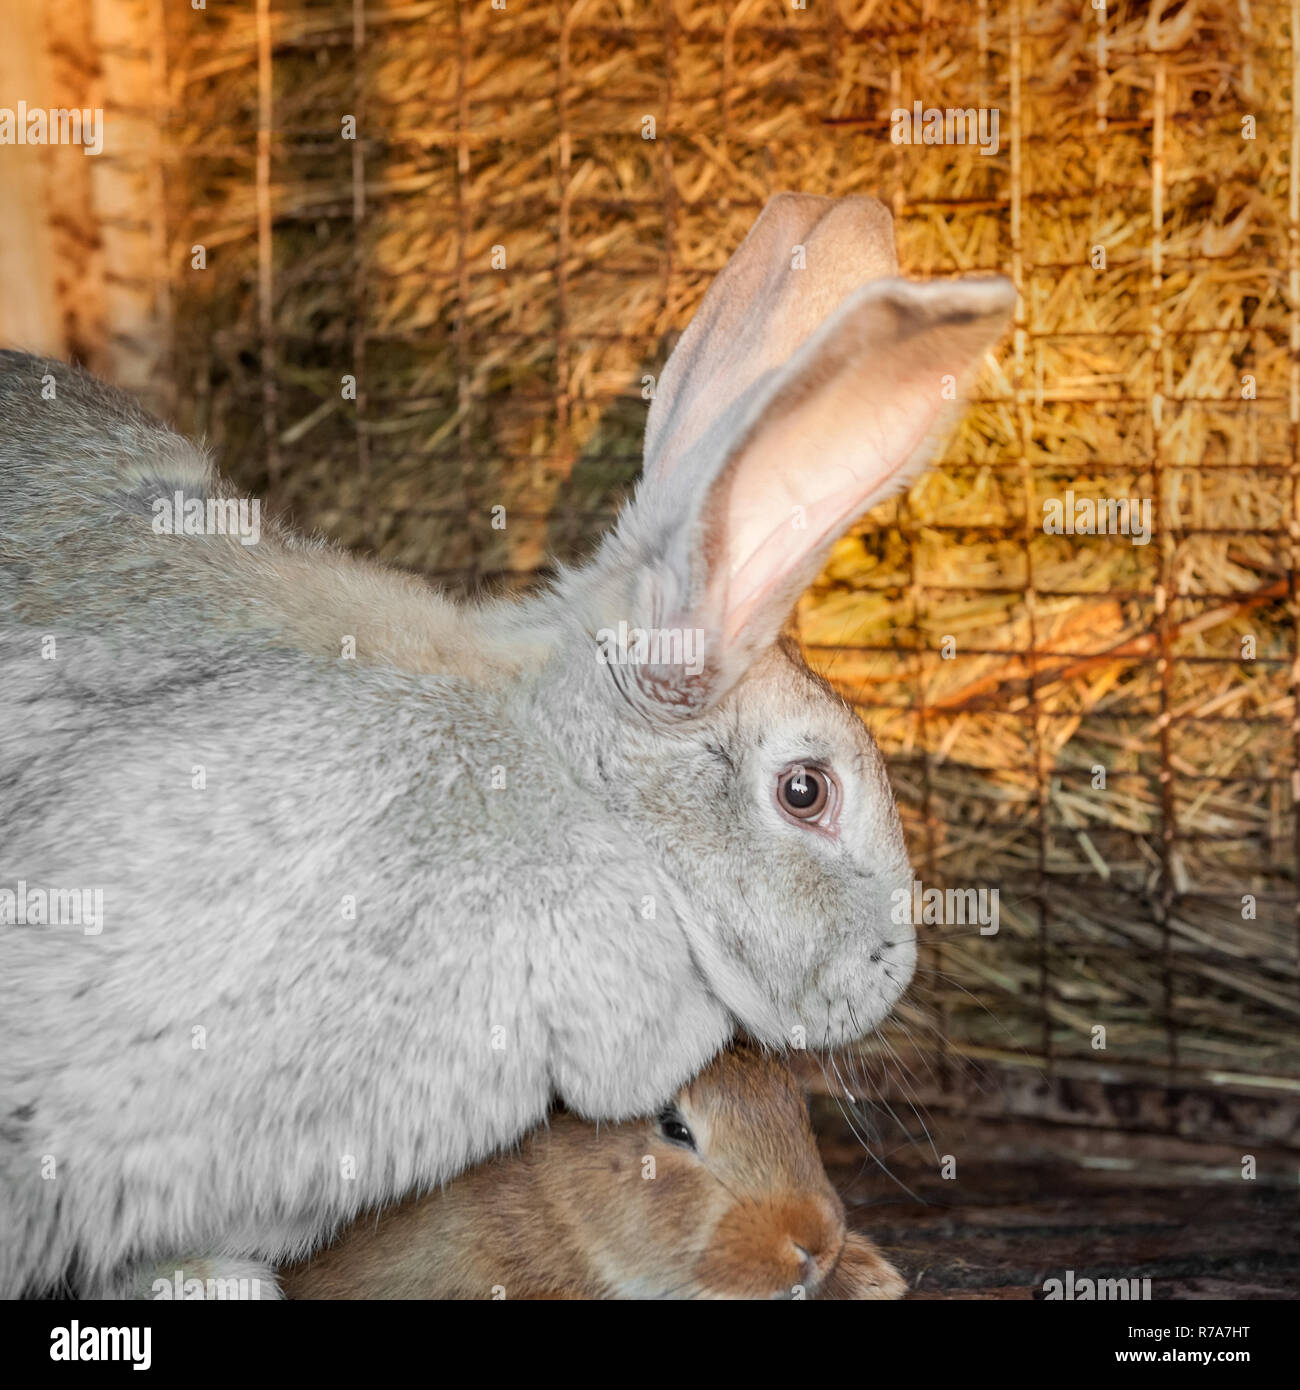 Eine große graue Kaninchen mit kleinen Hasen leben in einem Käfig mit Heu.  Bauernhof Tiere zum Verkauf Stockfotografie - Alamy